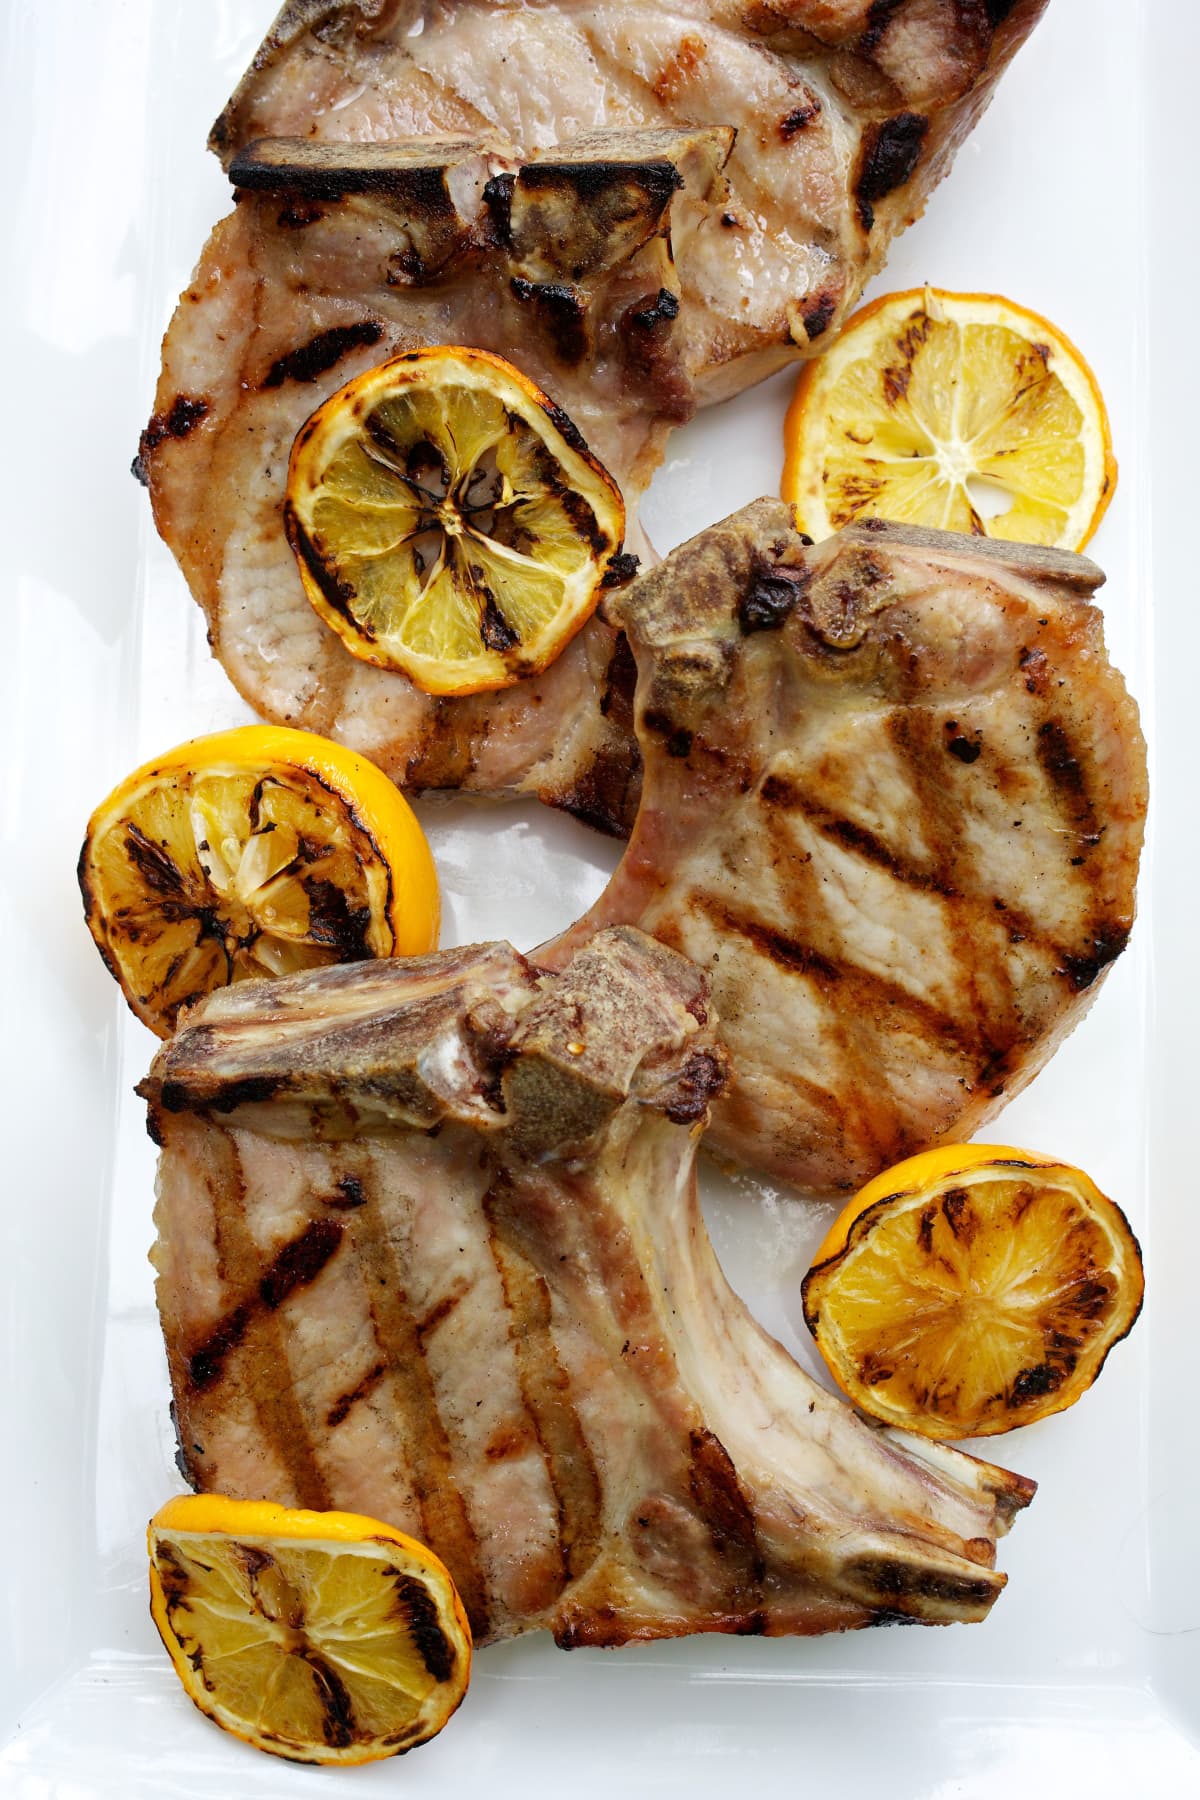 Pork chops with grilled lemon slices